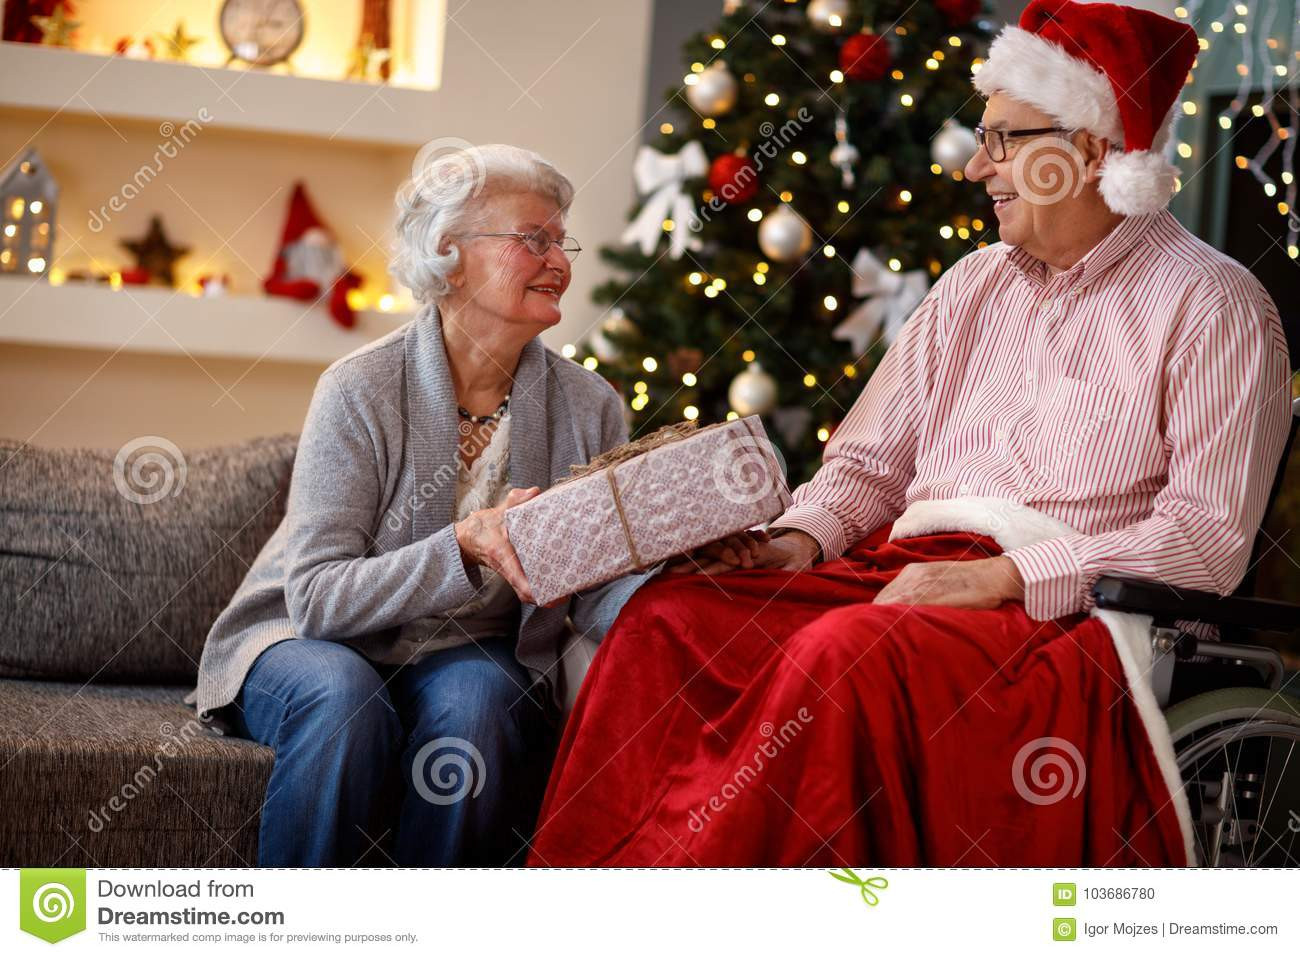 Christmas Gift Ideas For Older Couples
 Senior Couple At Christmas Sharing Christmas Gifts Stock